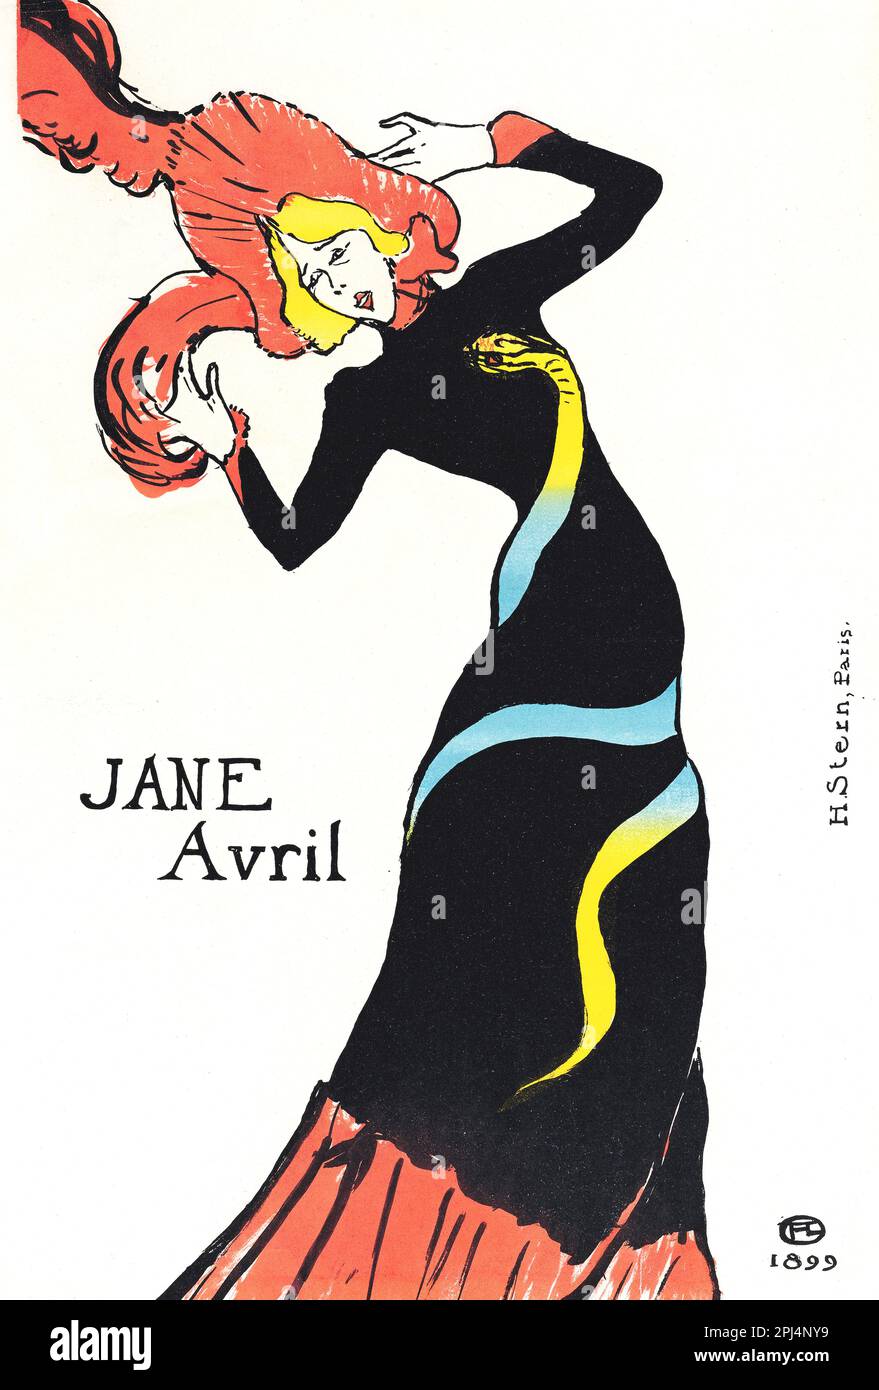 Jane avril - Dancer CAN-CAN - Henri de Toulouse-Lautrec - 1899 Banque D'Images